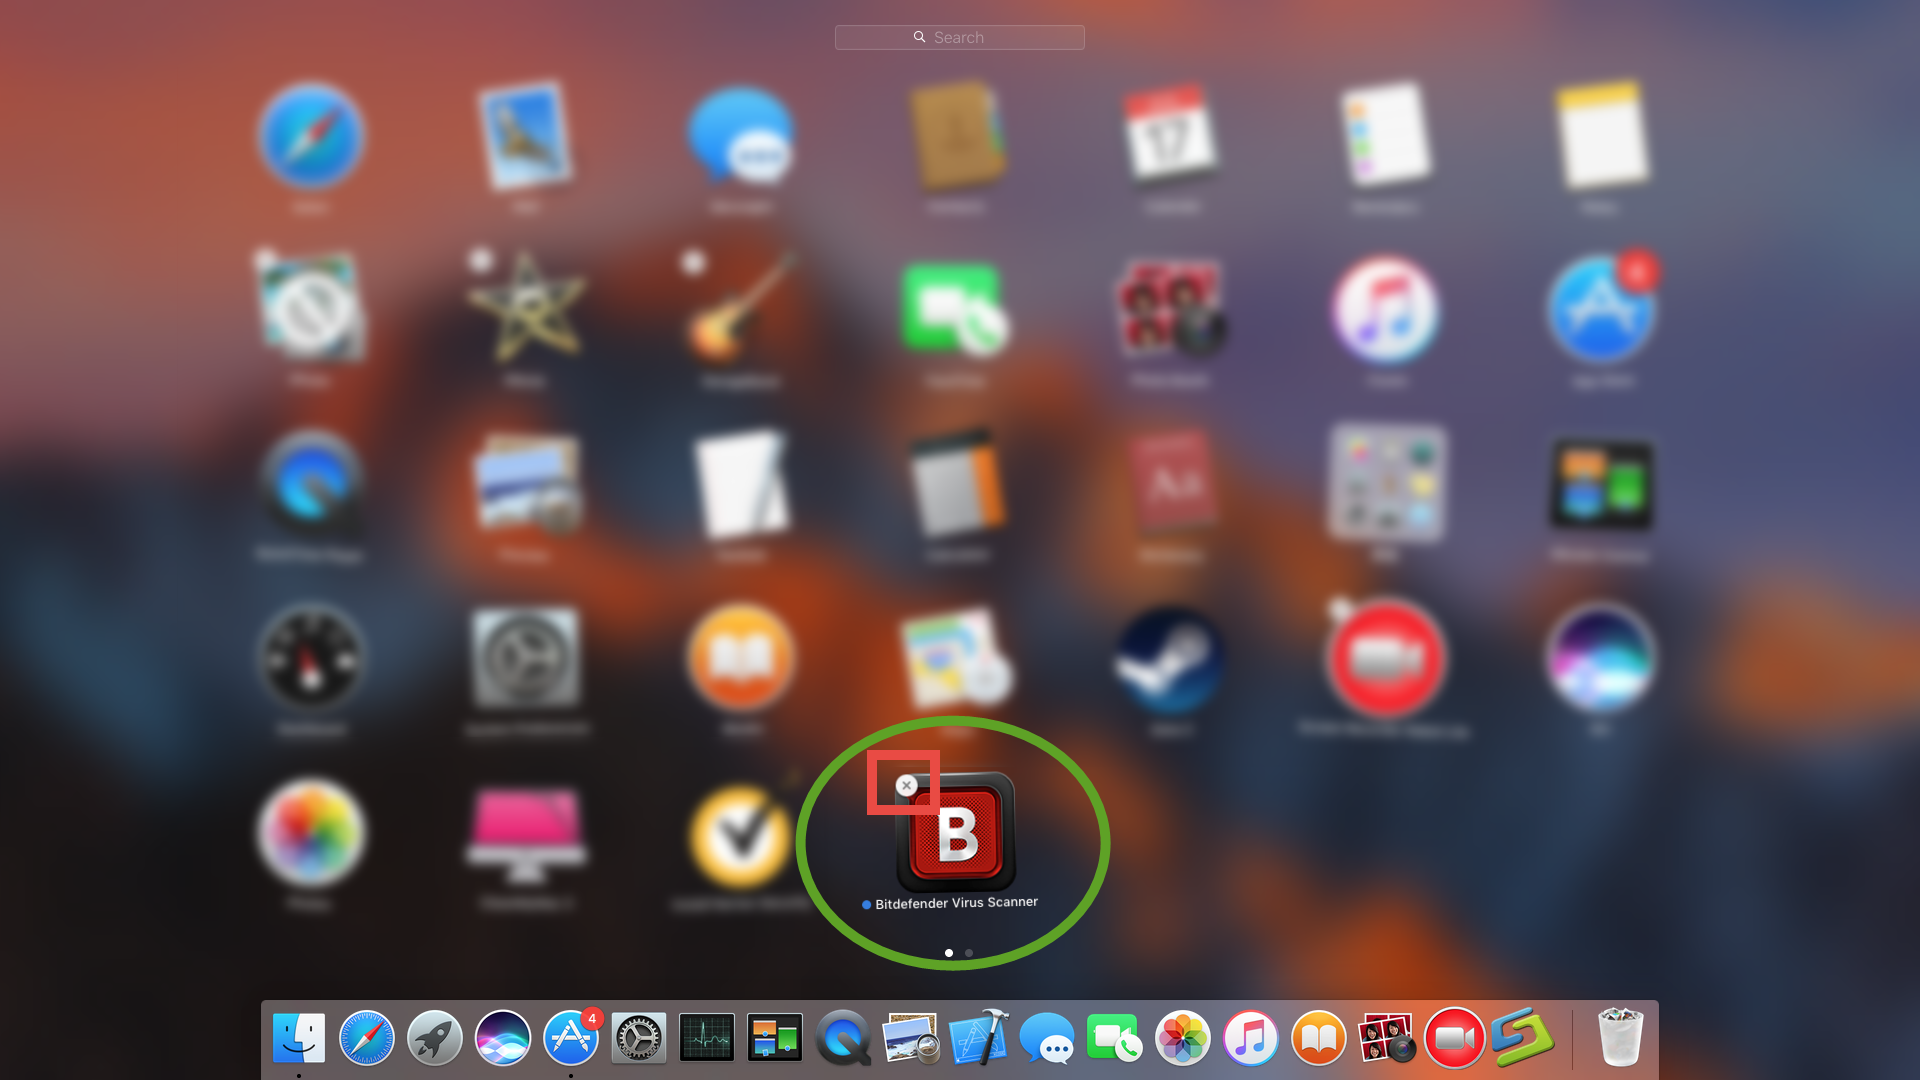 bitdefender uninstall tool for mac